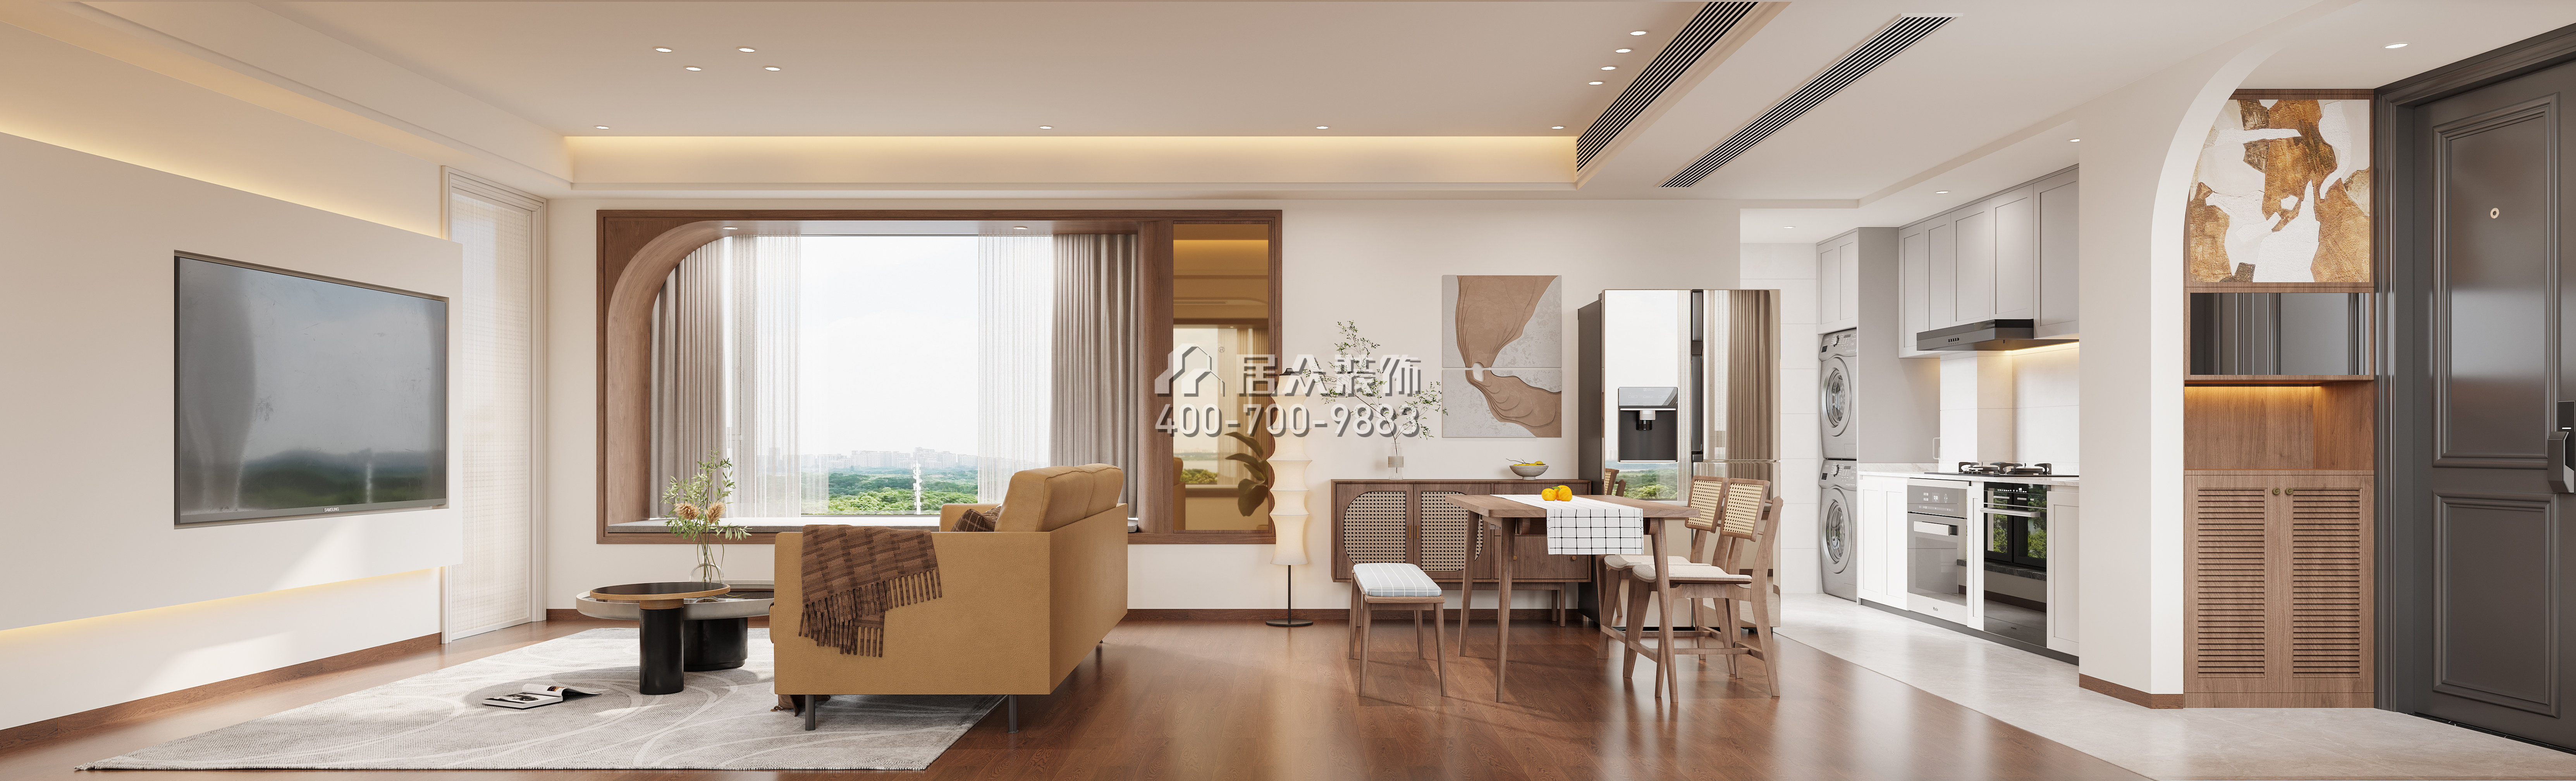 新天鵝堡三期122平方米混搭風格平層戶型客廳裝修效果圖